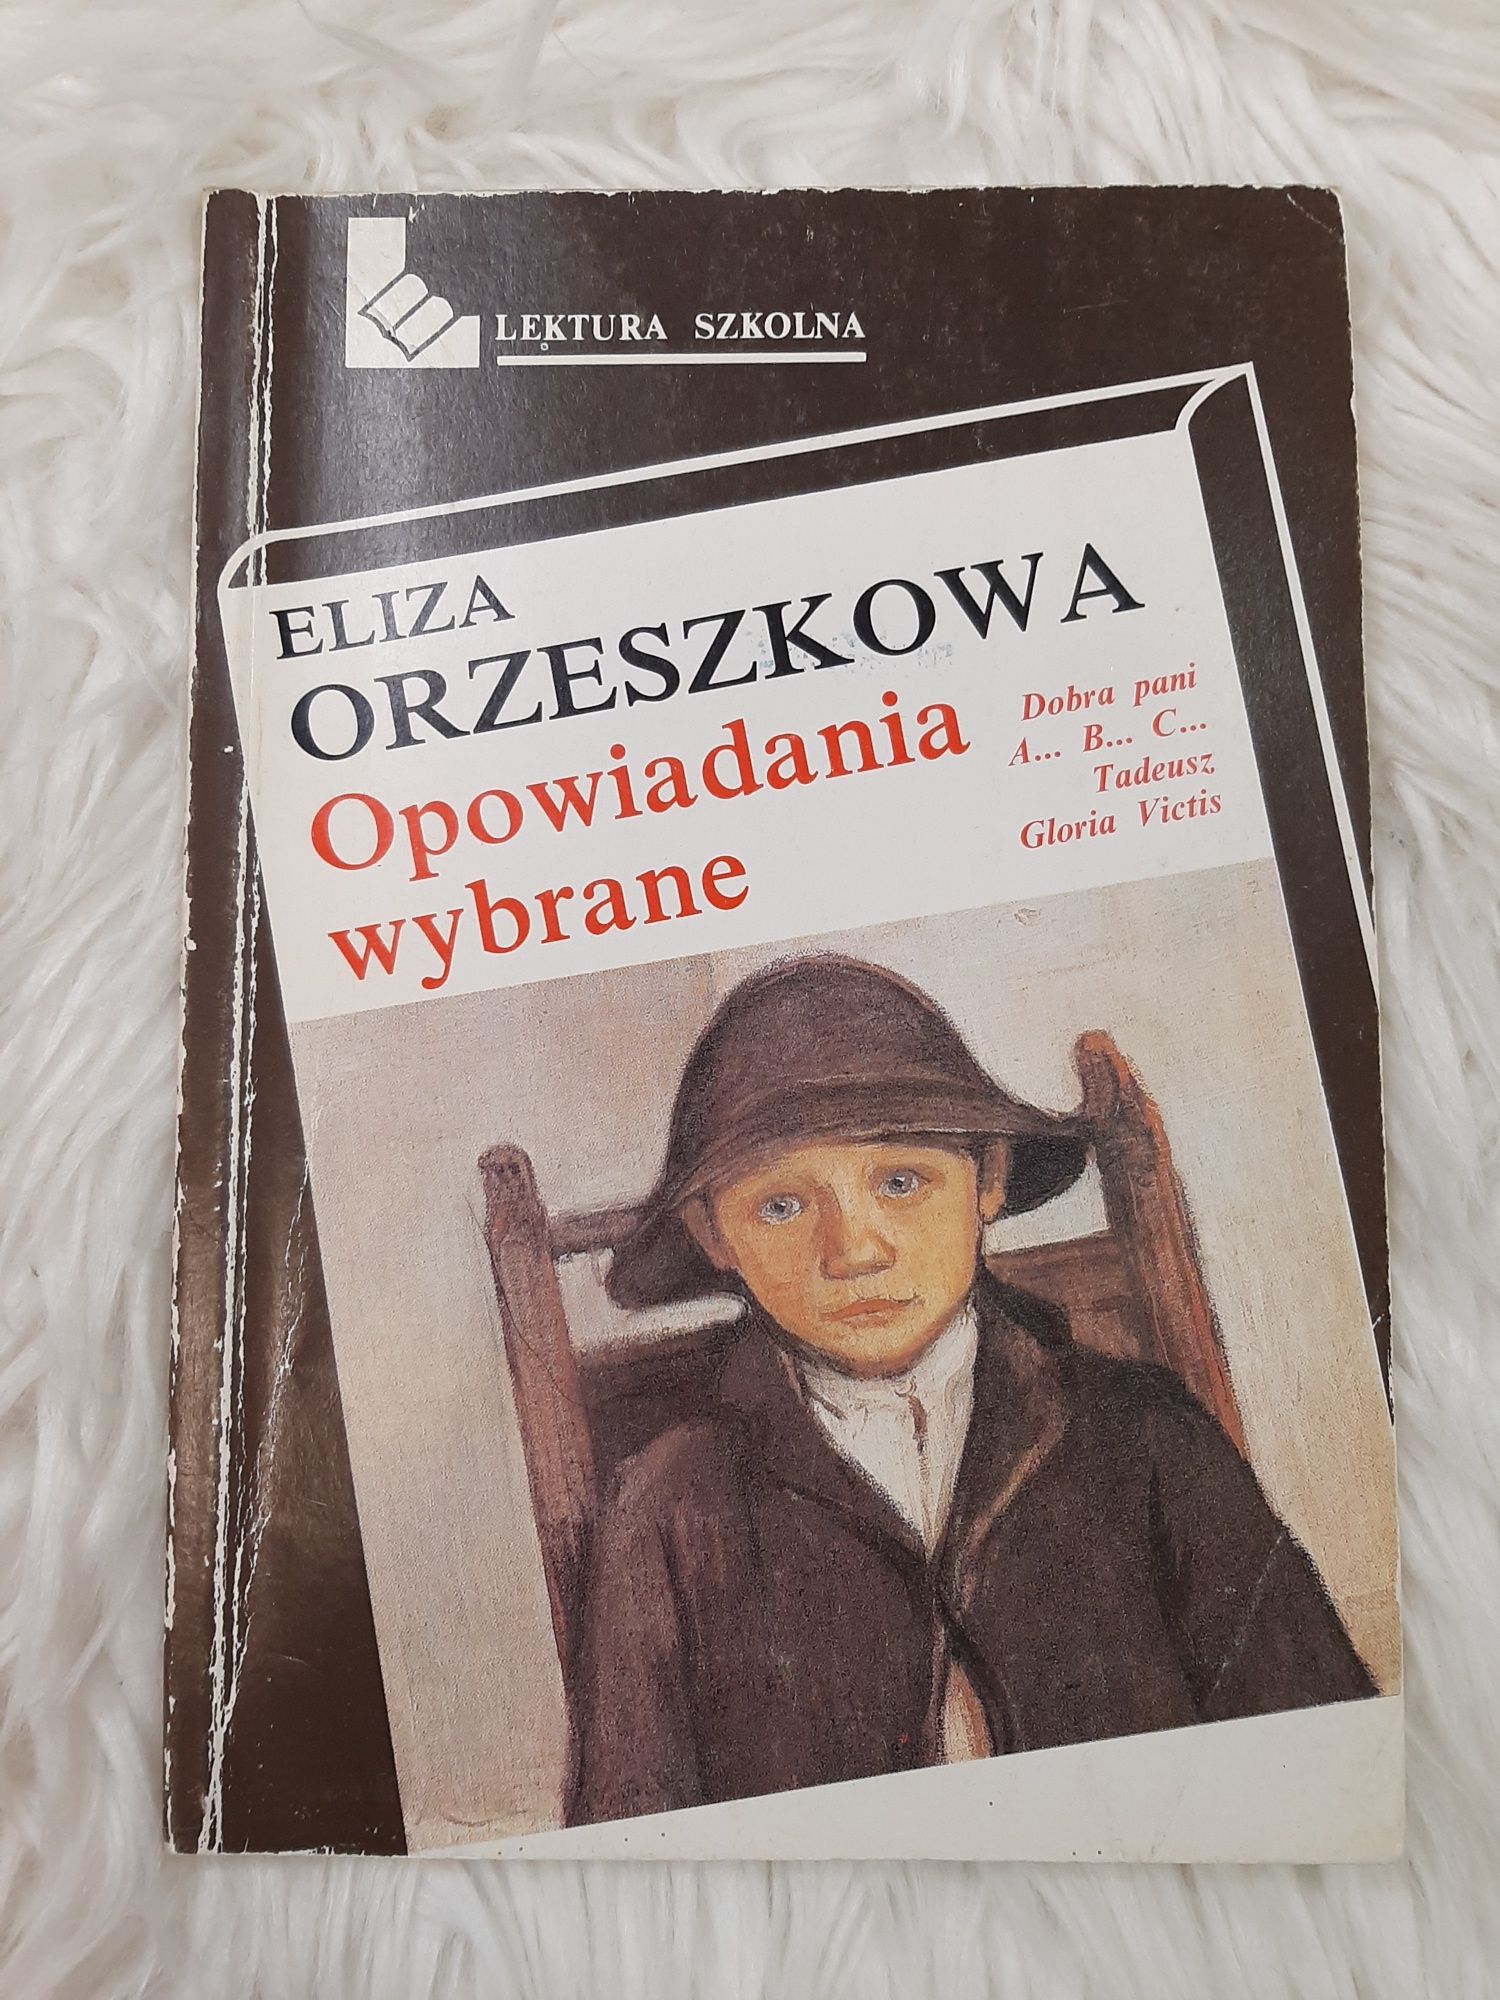 Eliza Orzeszkowa - Opowiadania wybrane